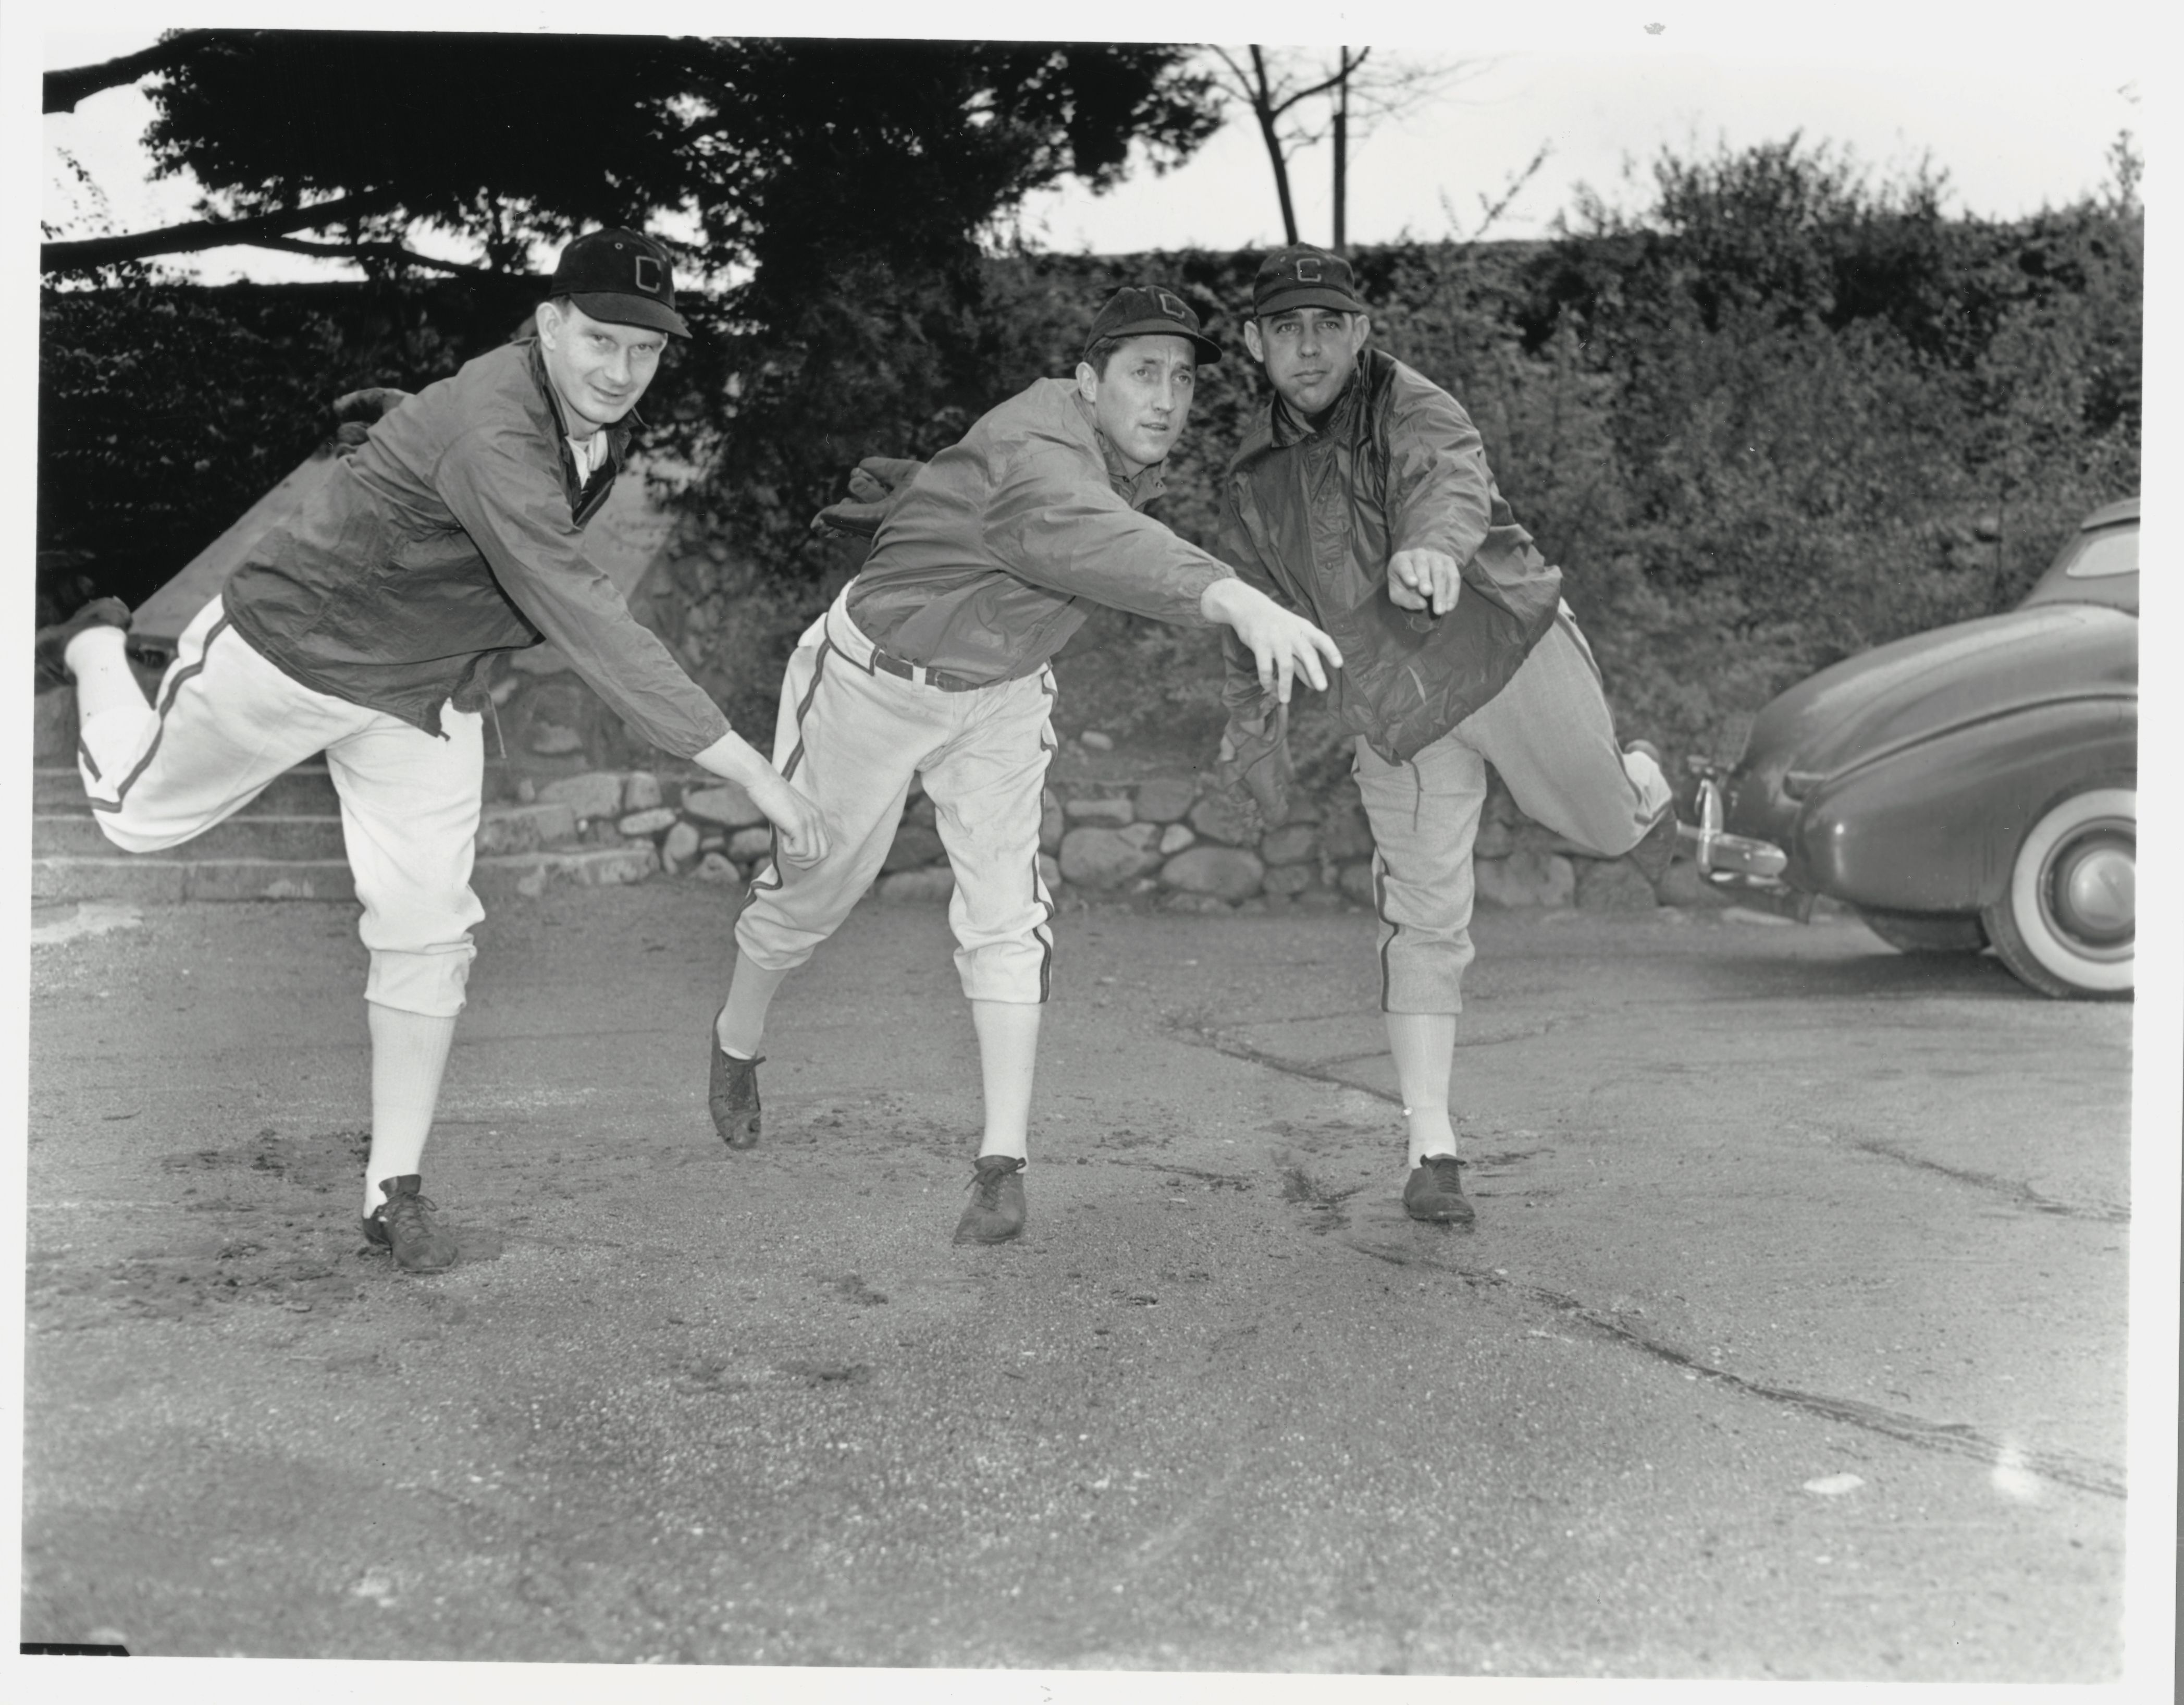 Photo of three men throwing baseballs. 